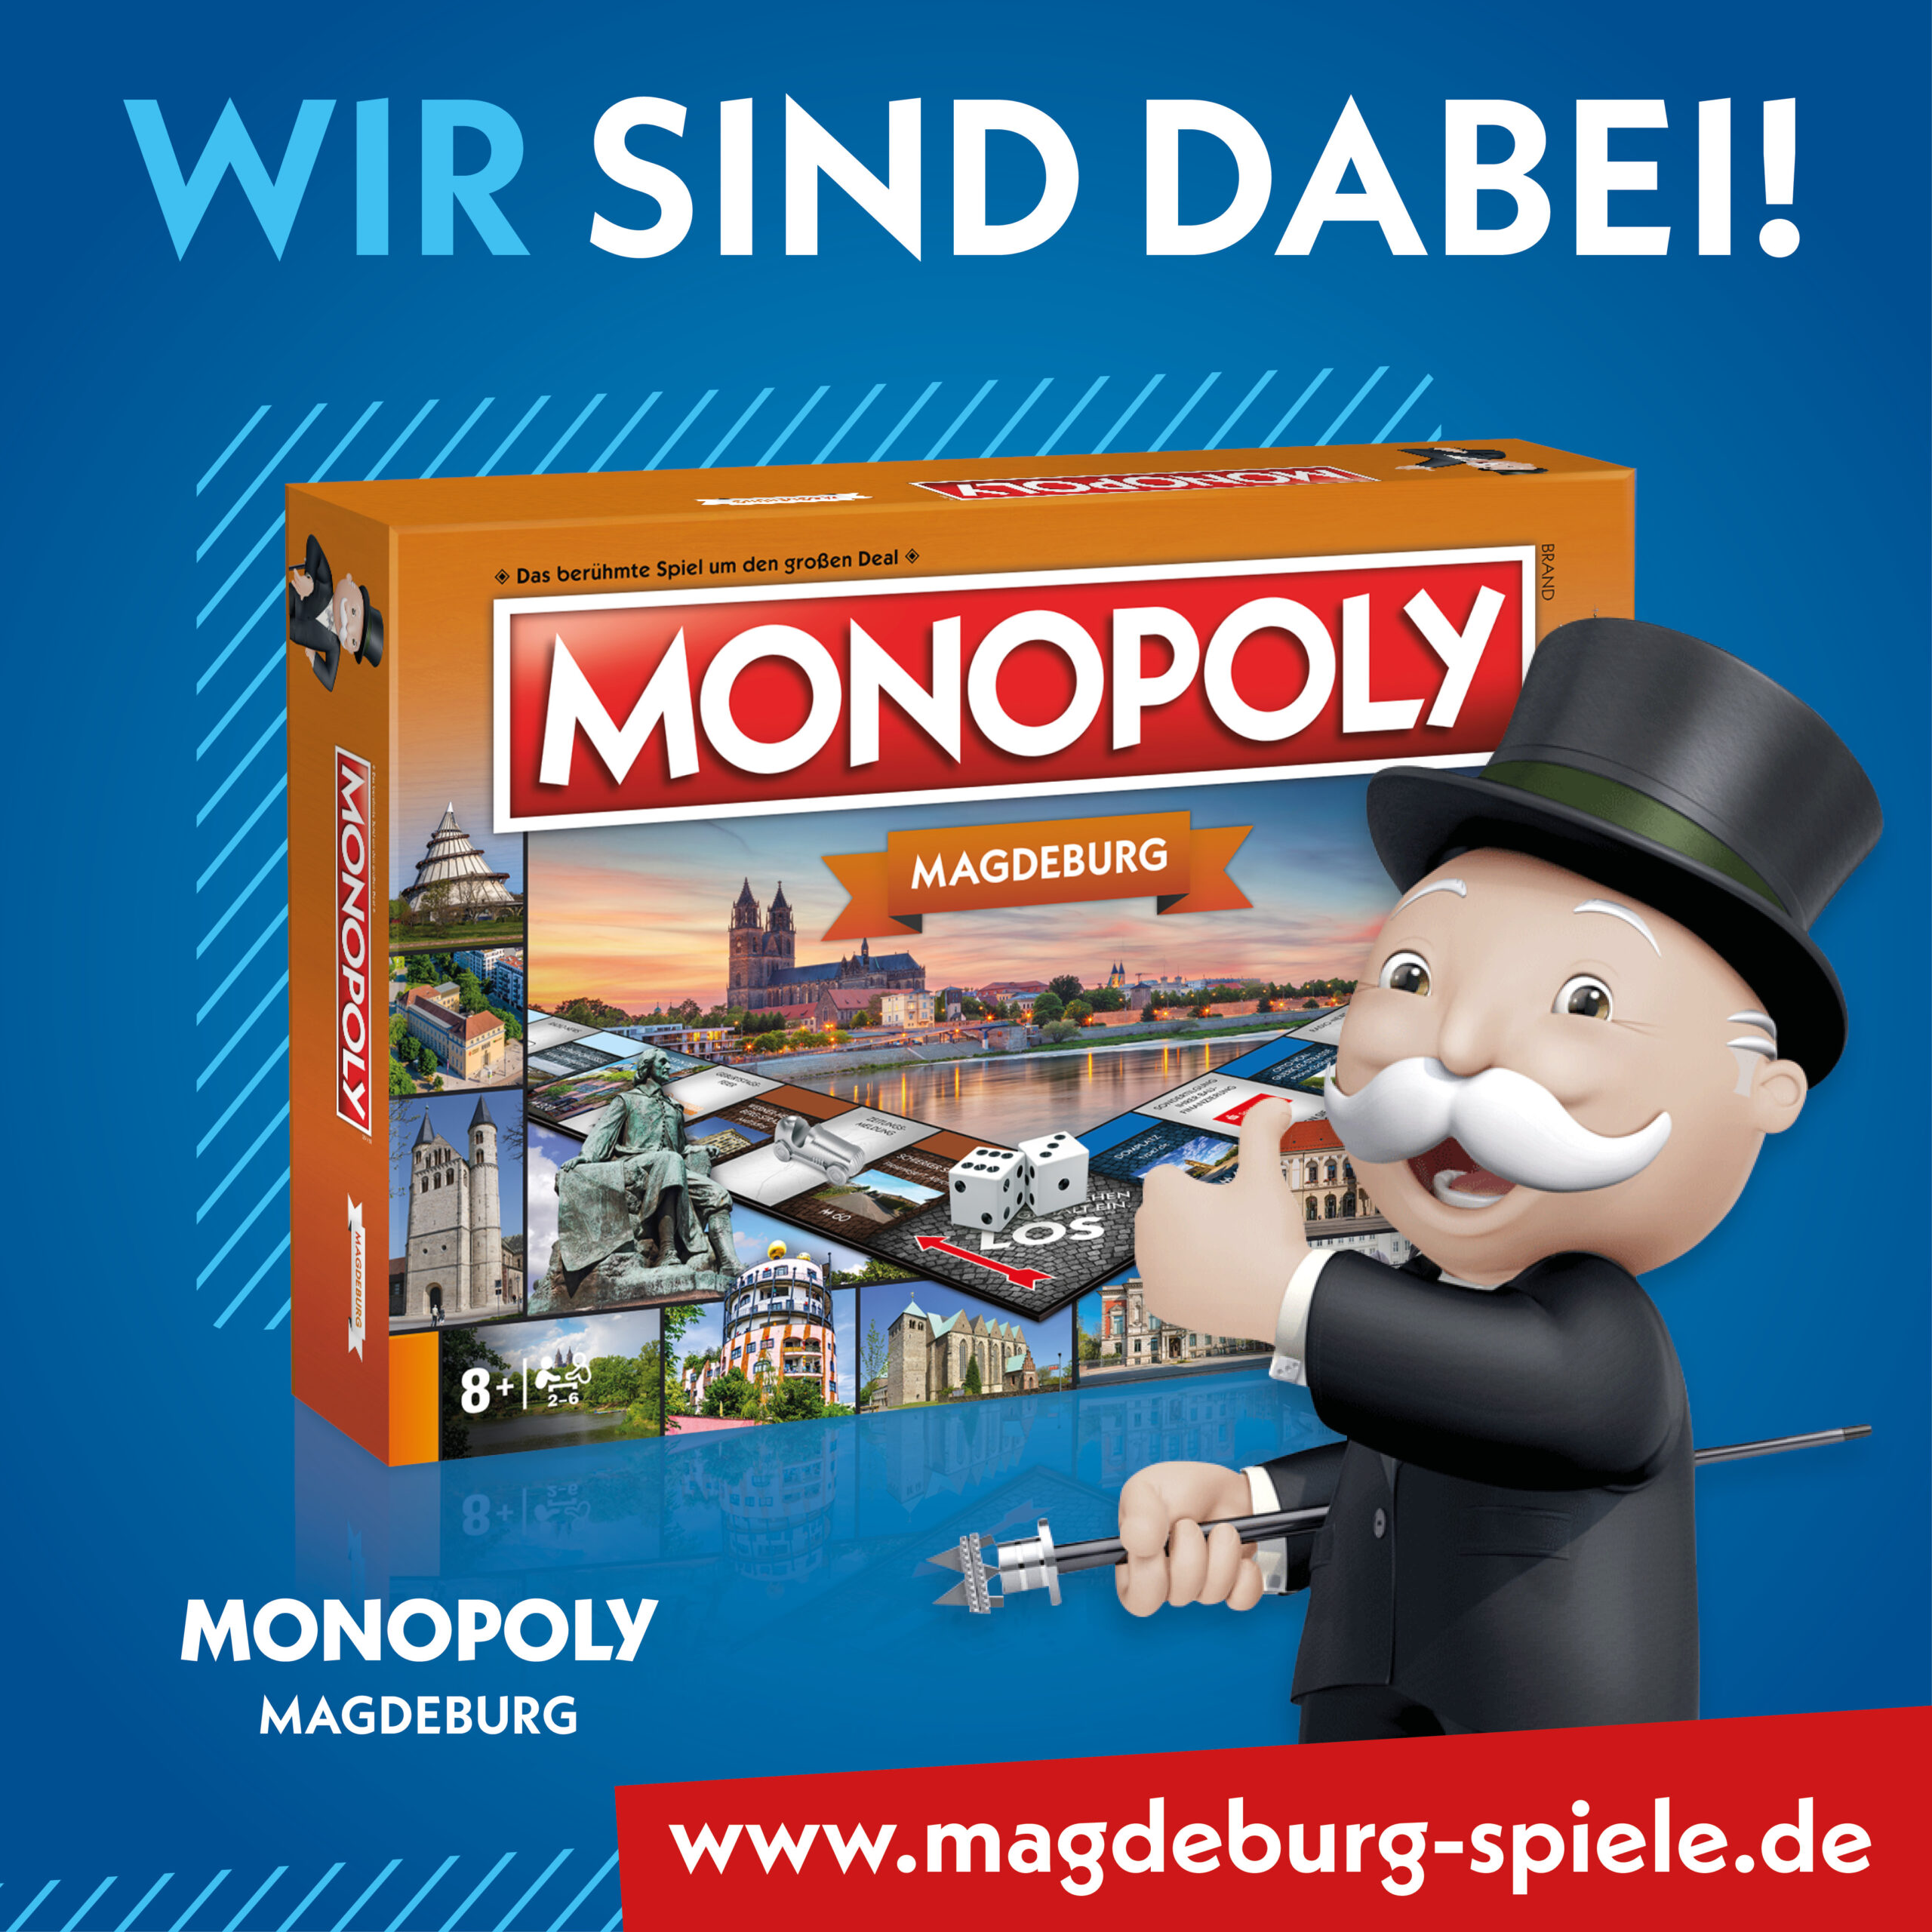 Gewinnen Sie jede Woche ein Monopoly-Magdeburg-Spiel!